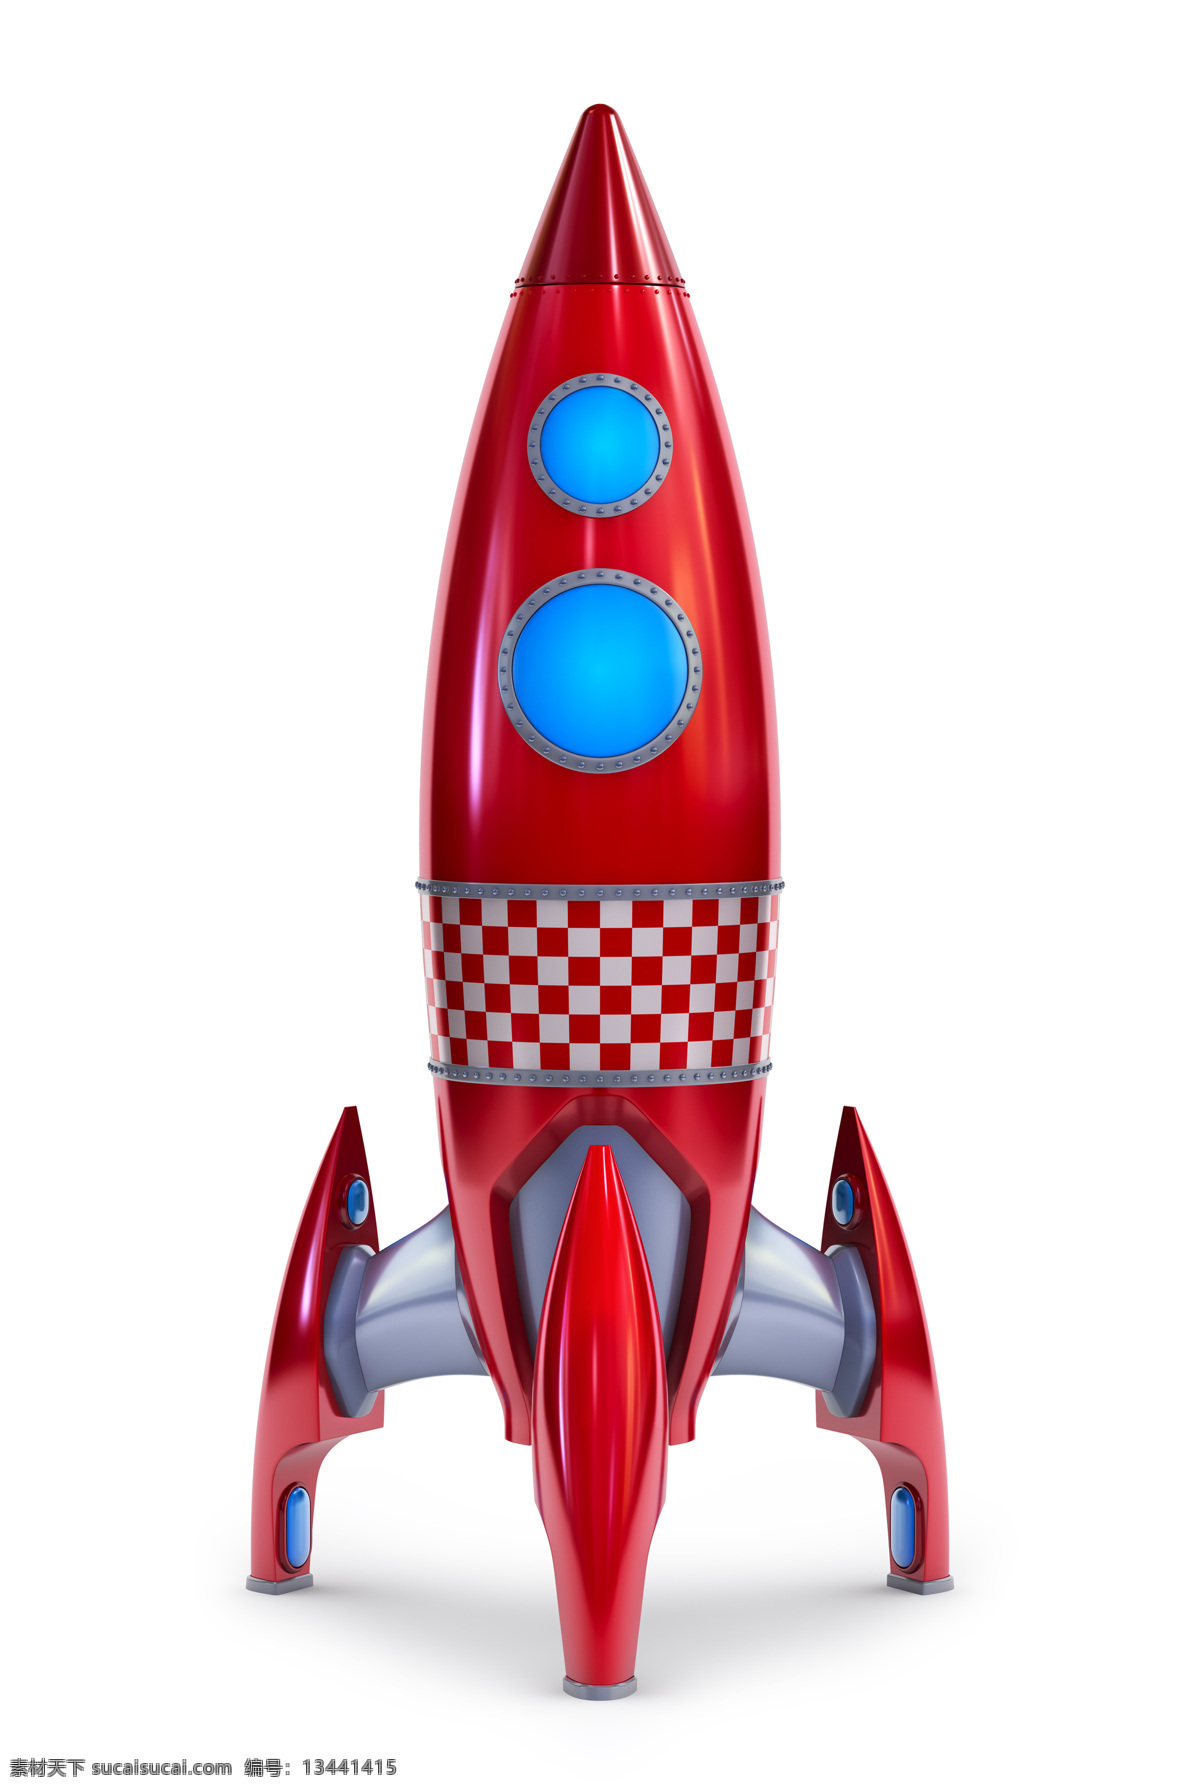 玩具 火箭 模型 火箭模型 航天科技 宇宙太空 环境家居